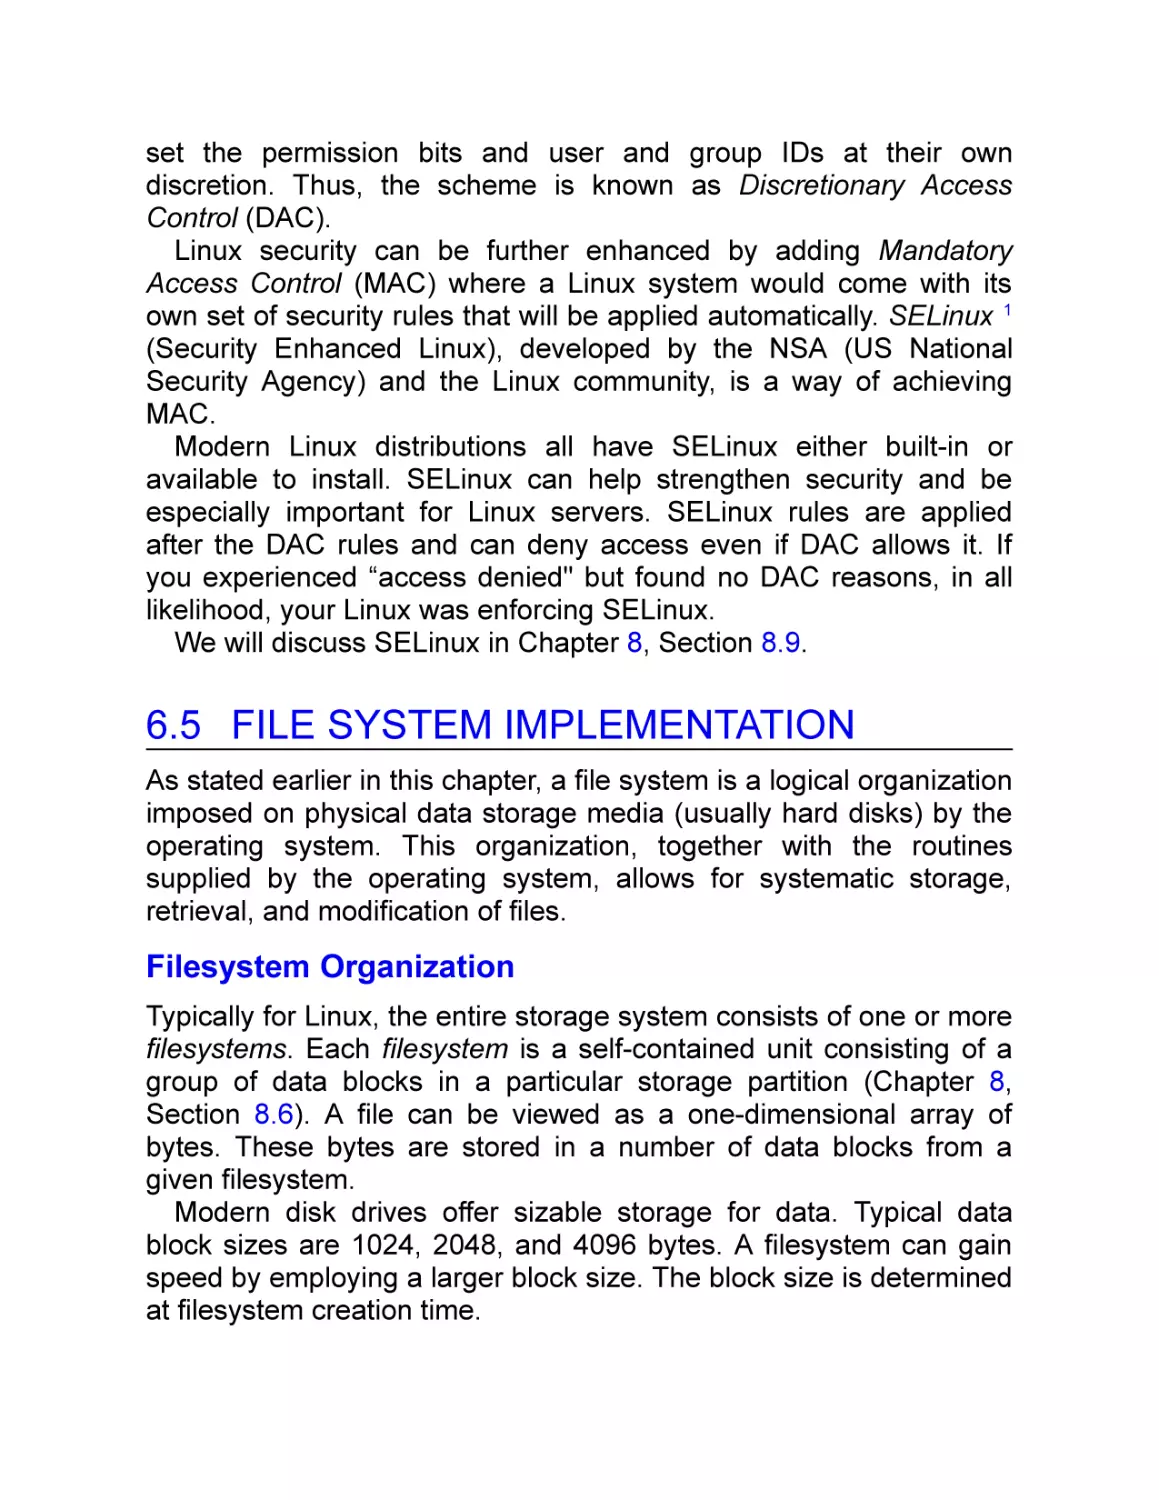 6.5 File System Implementation
Filesystem Organization